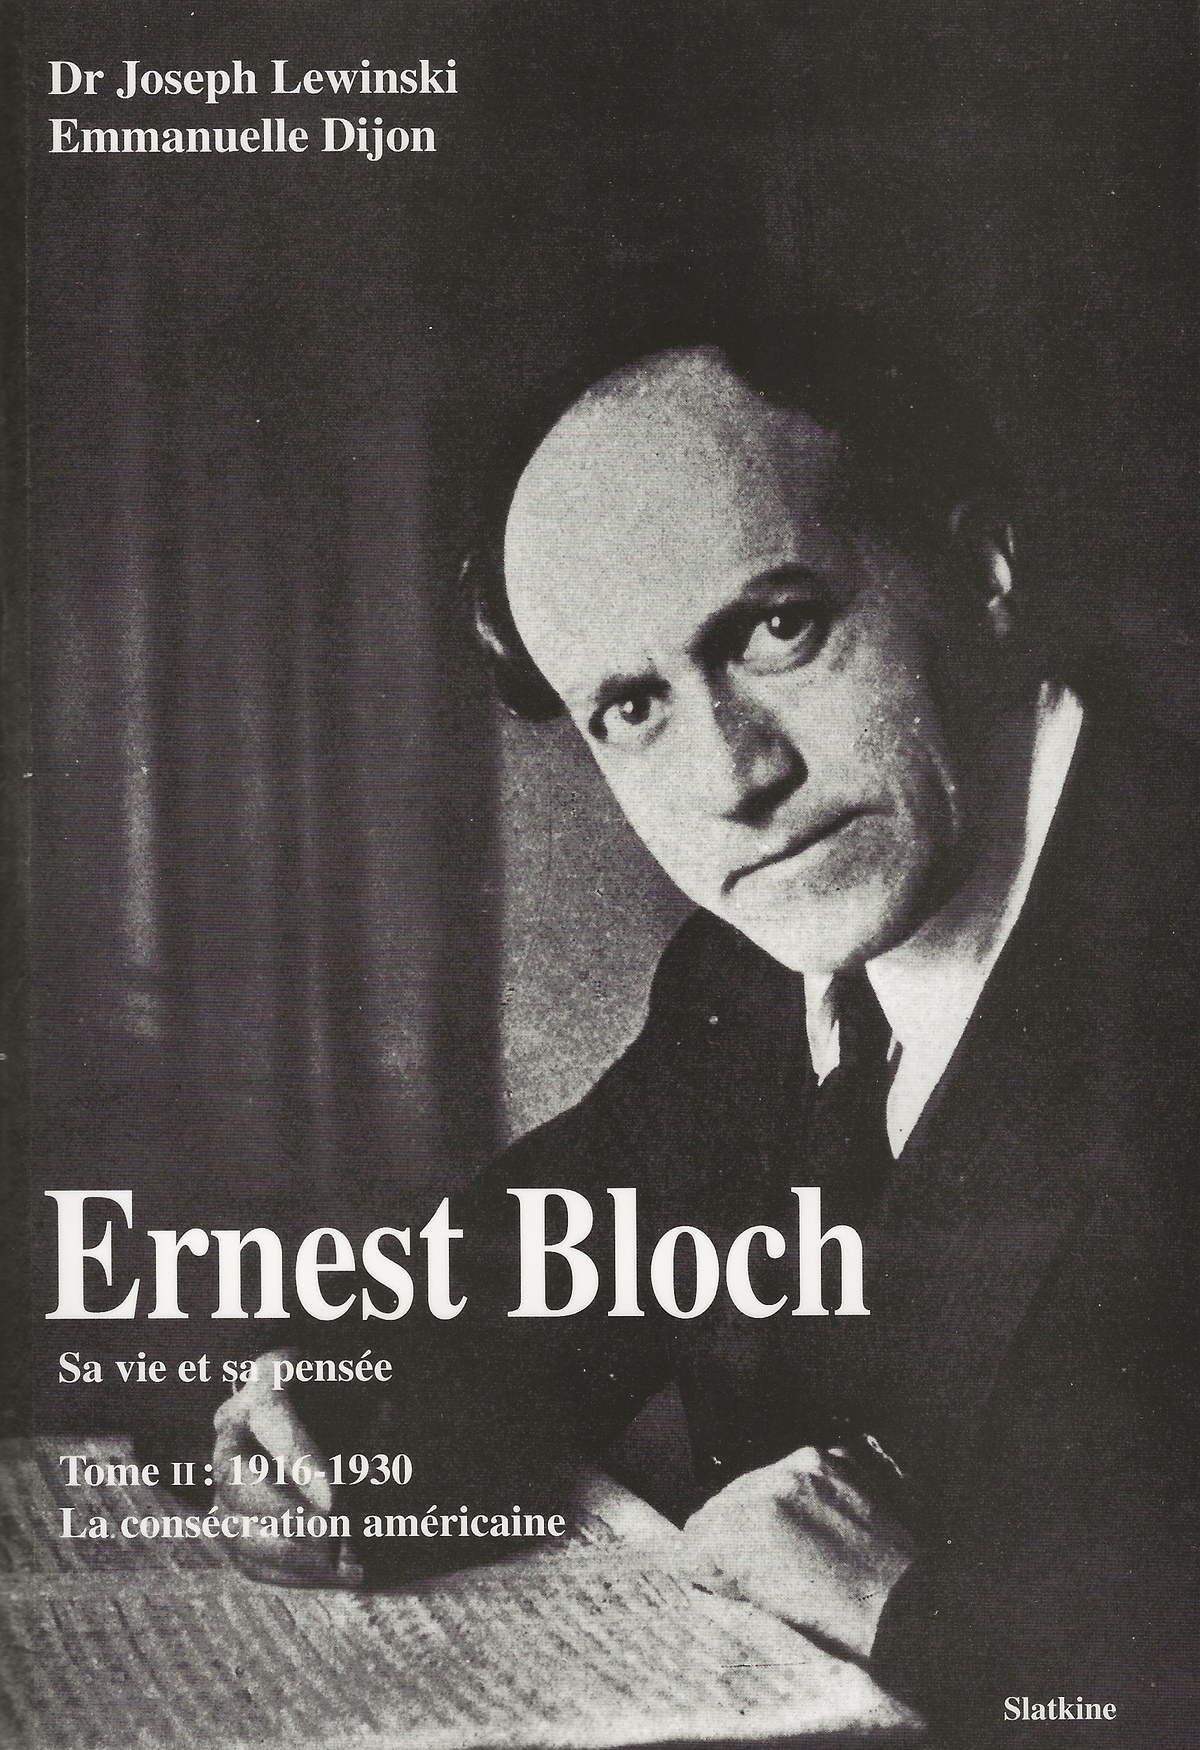 Ernest BLOCH, page de couverture de l'ouvrage de Joseph Lewinski et Emmanuelle Dijon “Ernest Bloch - Sa vie et sa pensée” publié chez Slatkine, 2e volume